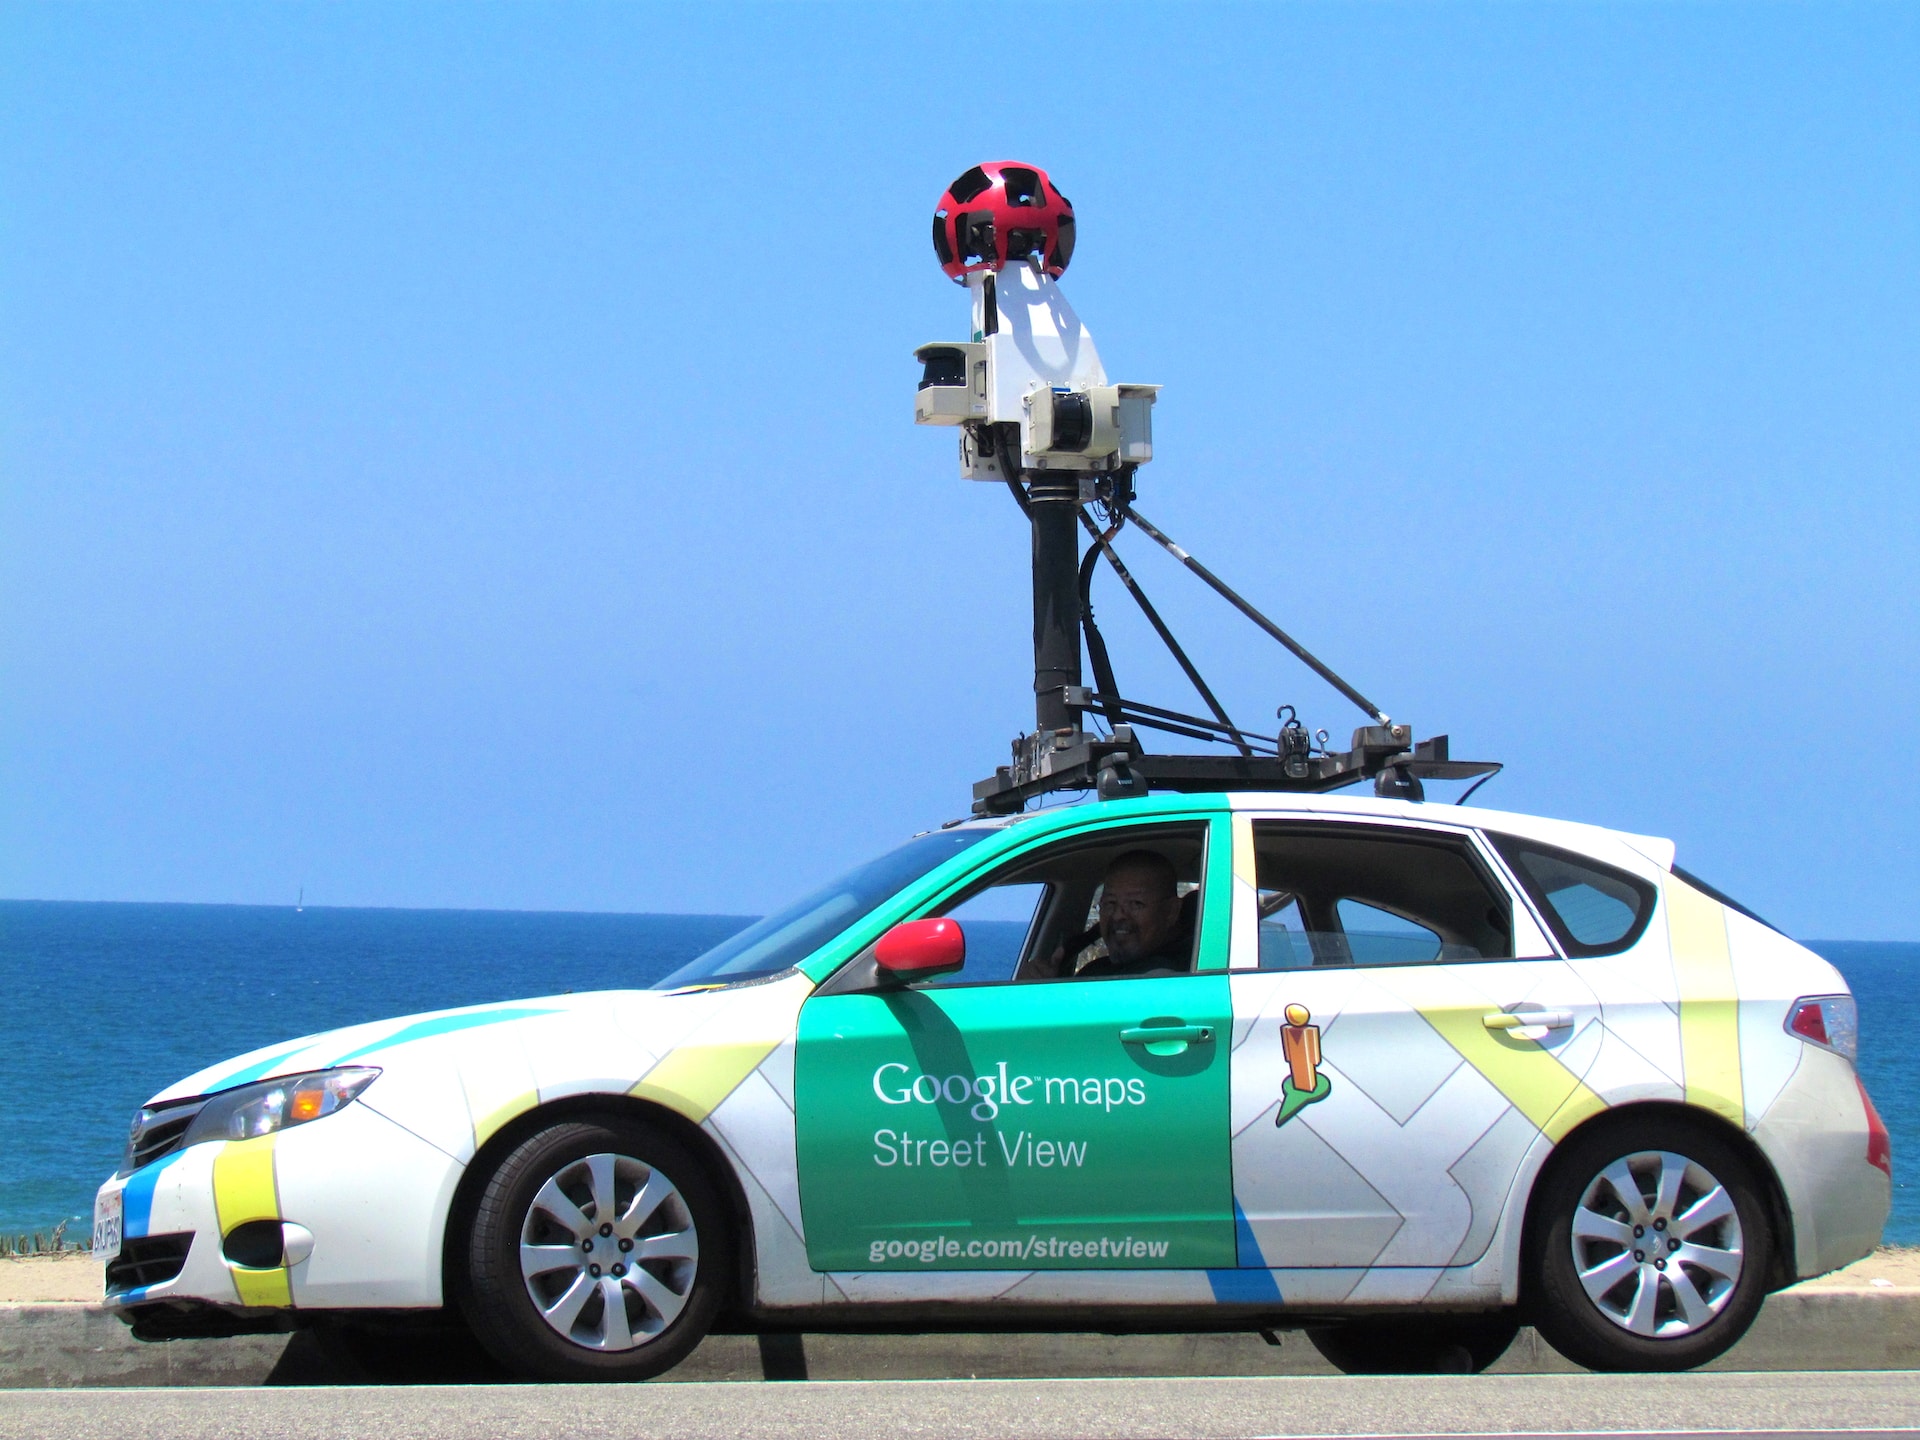 Voor het eerst in dertien jaar nieuwe Google Street View-foto’s in Duitsland